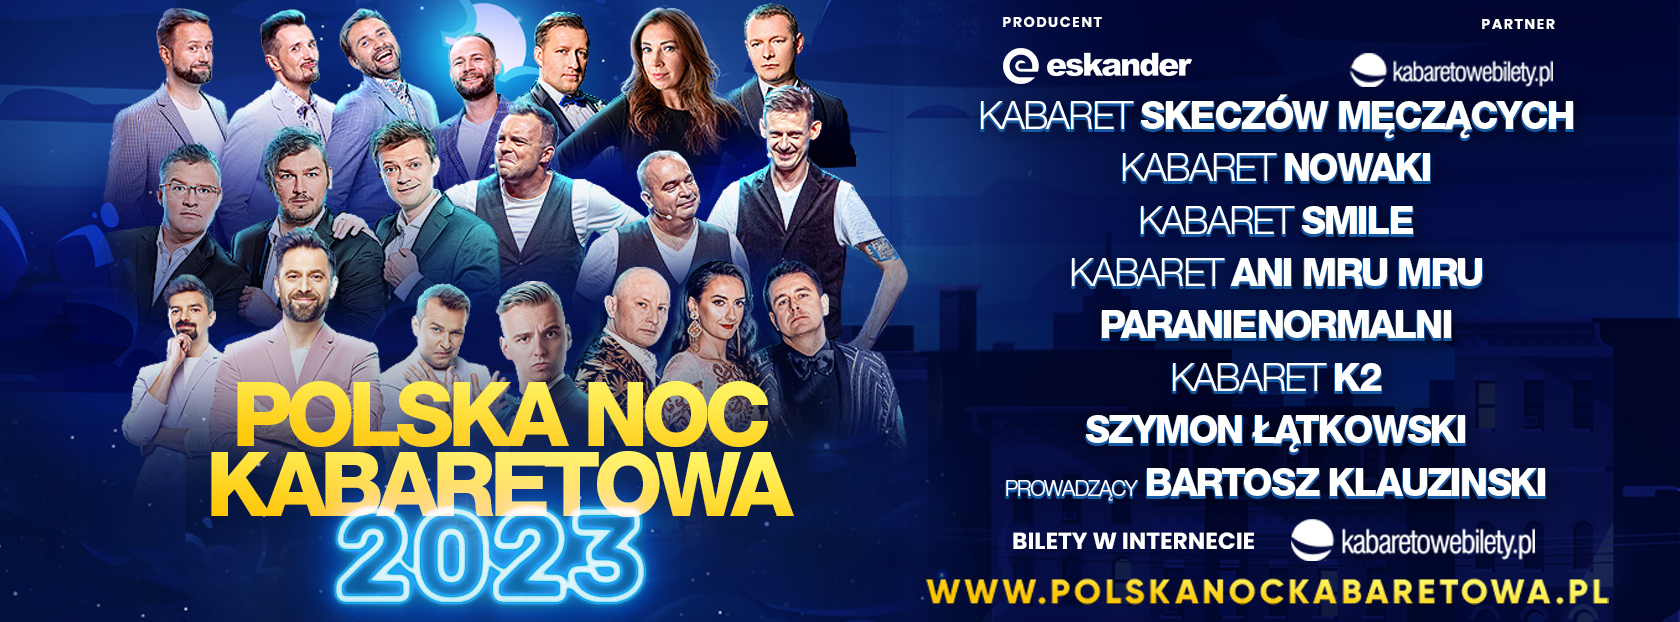 Polska Noc Kabaretowa | Wykonawcy